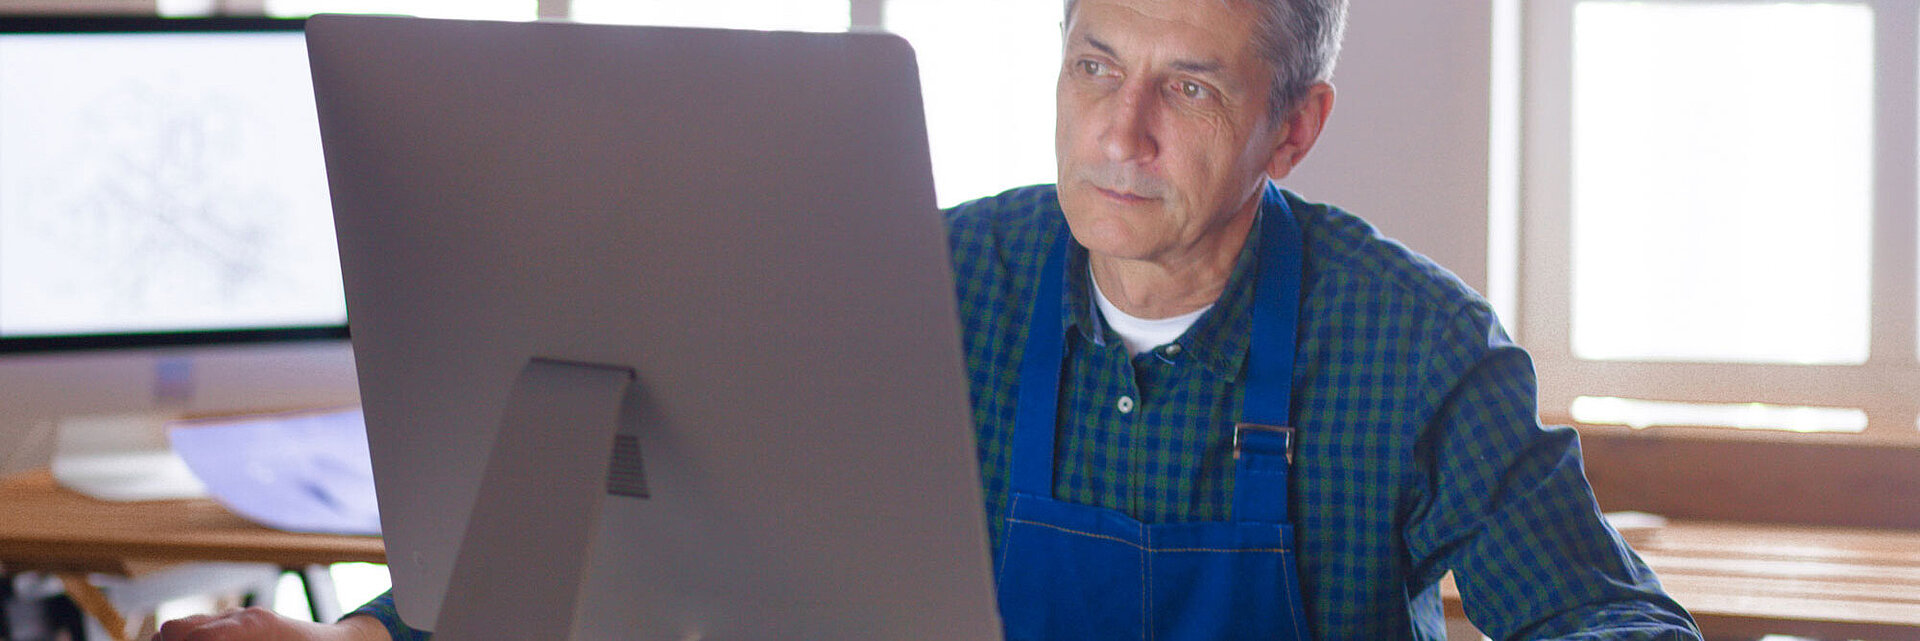 Mann in blauer Latzhose sitzt vor einem Computer